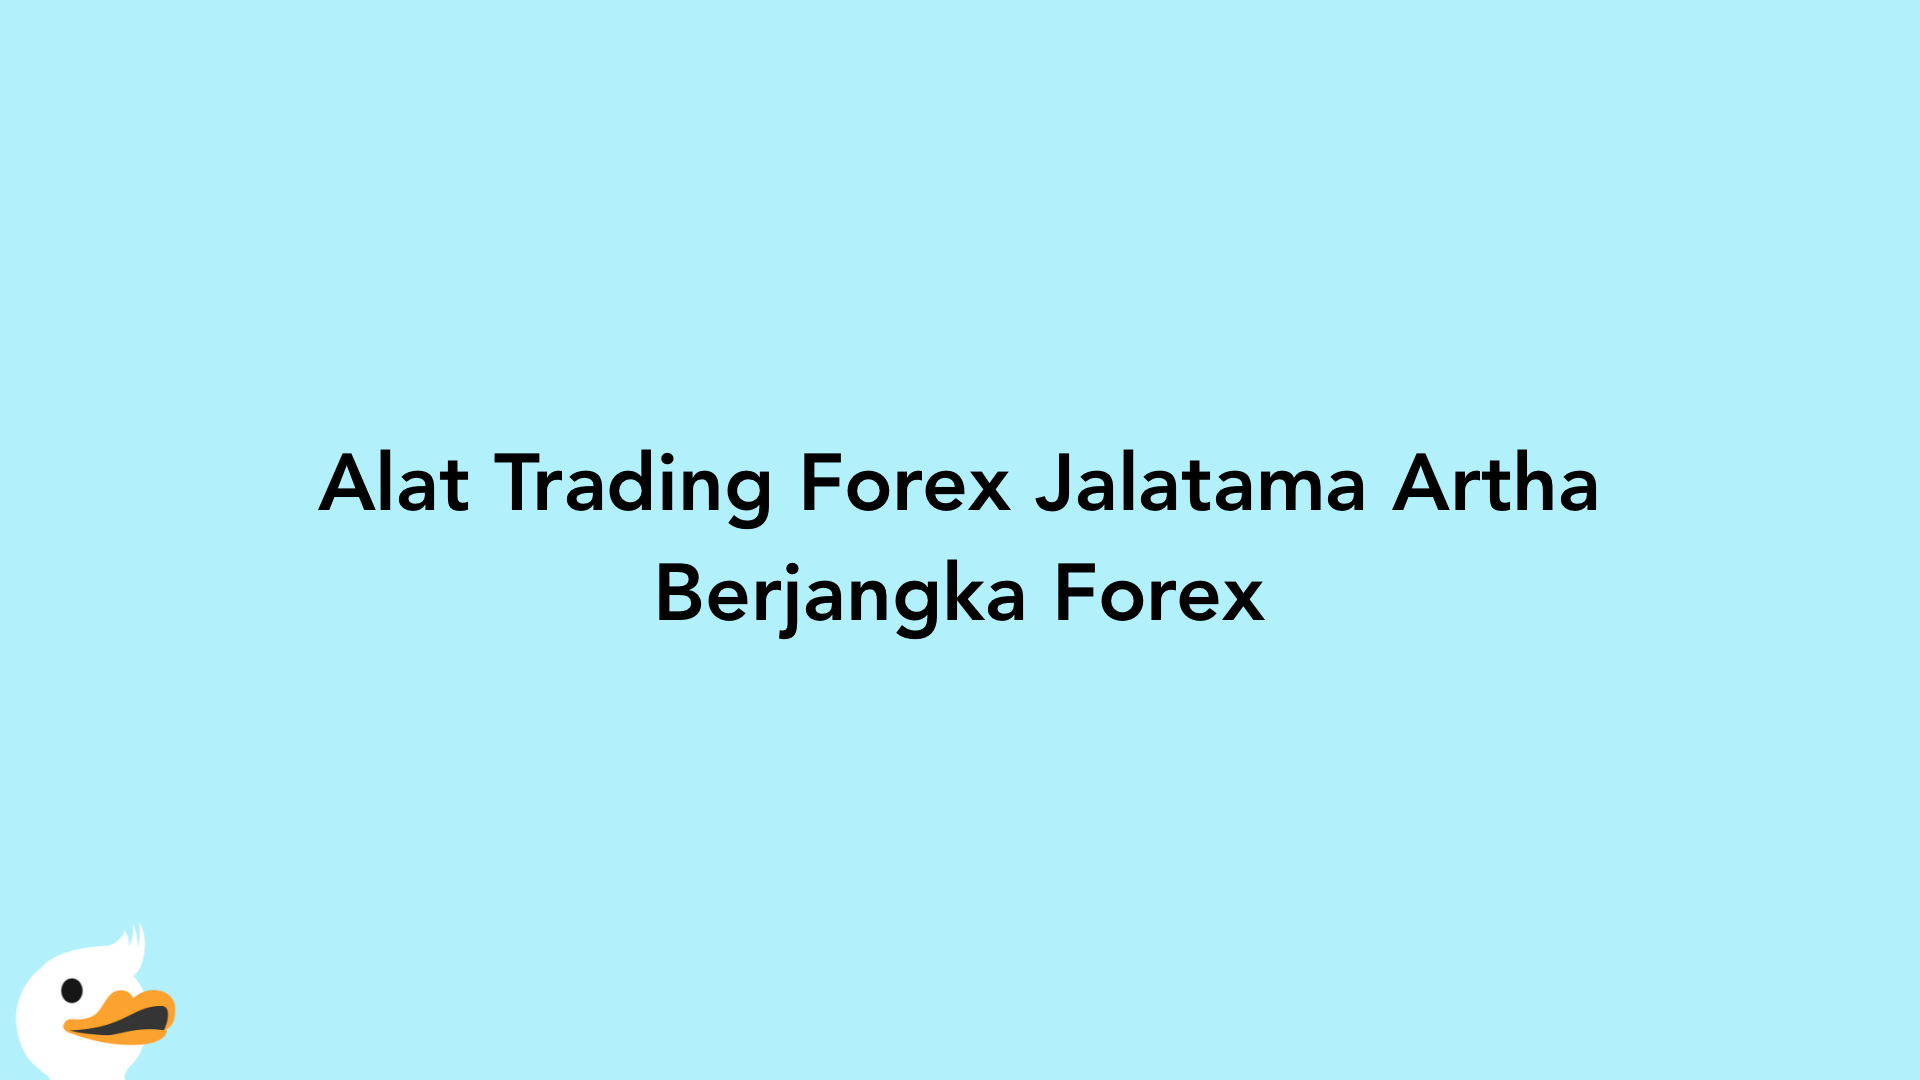 Alat Trading Forex Jalatama Artha Berjangka Forex